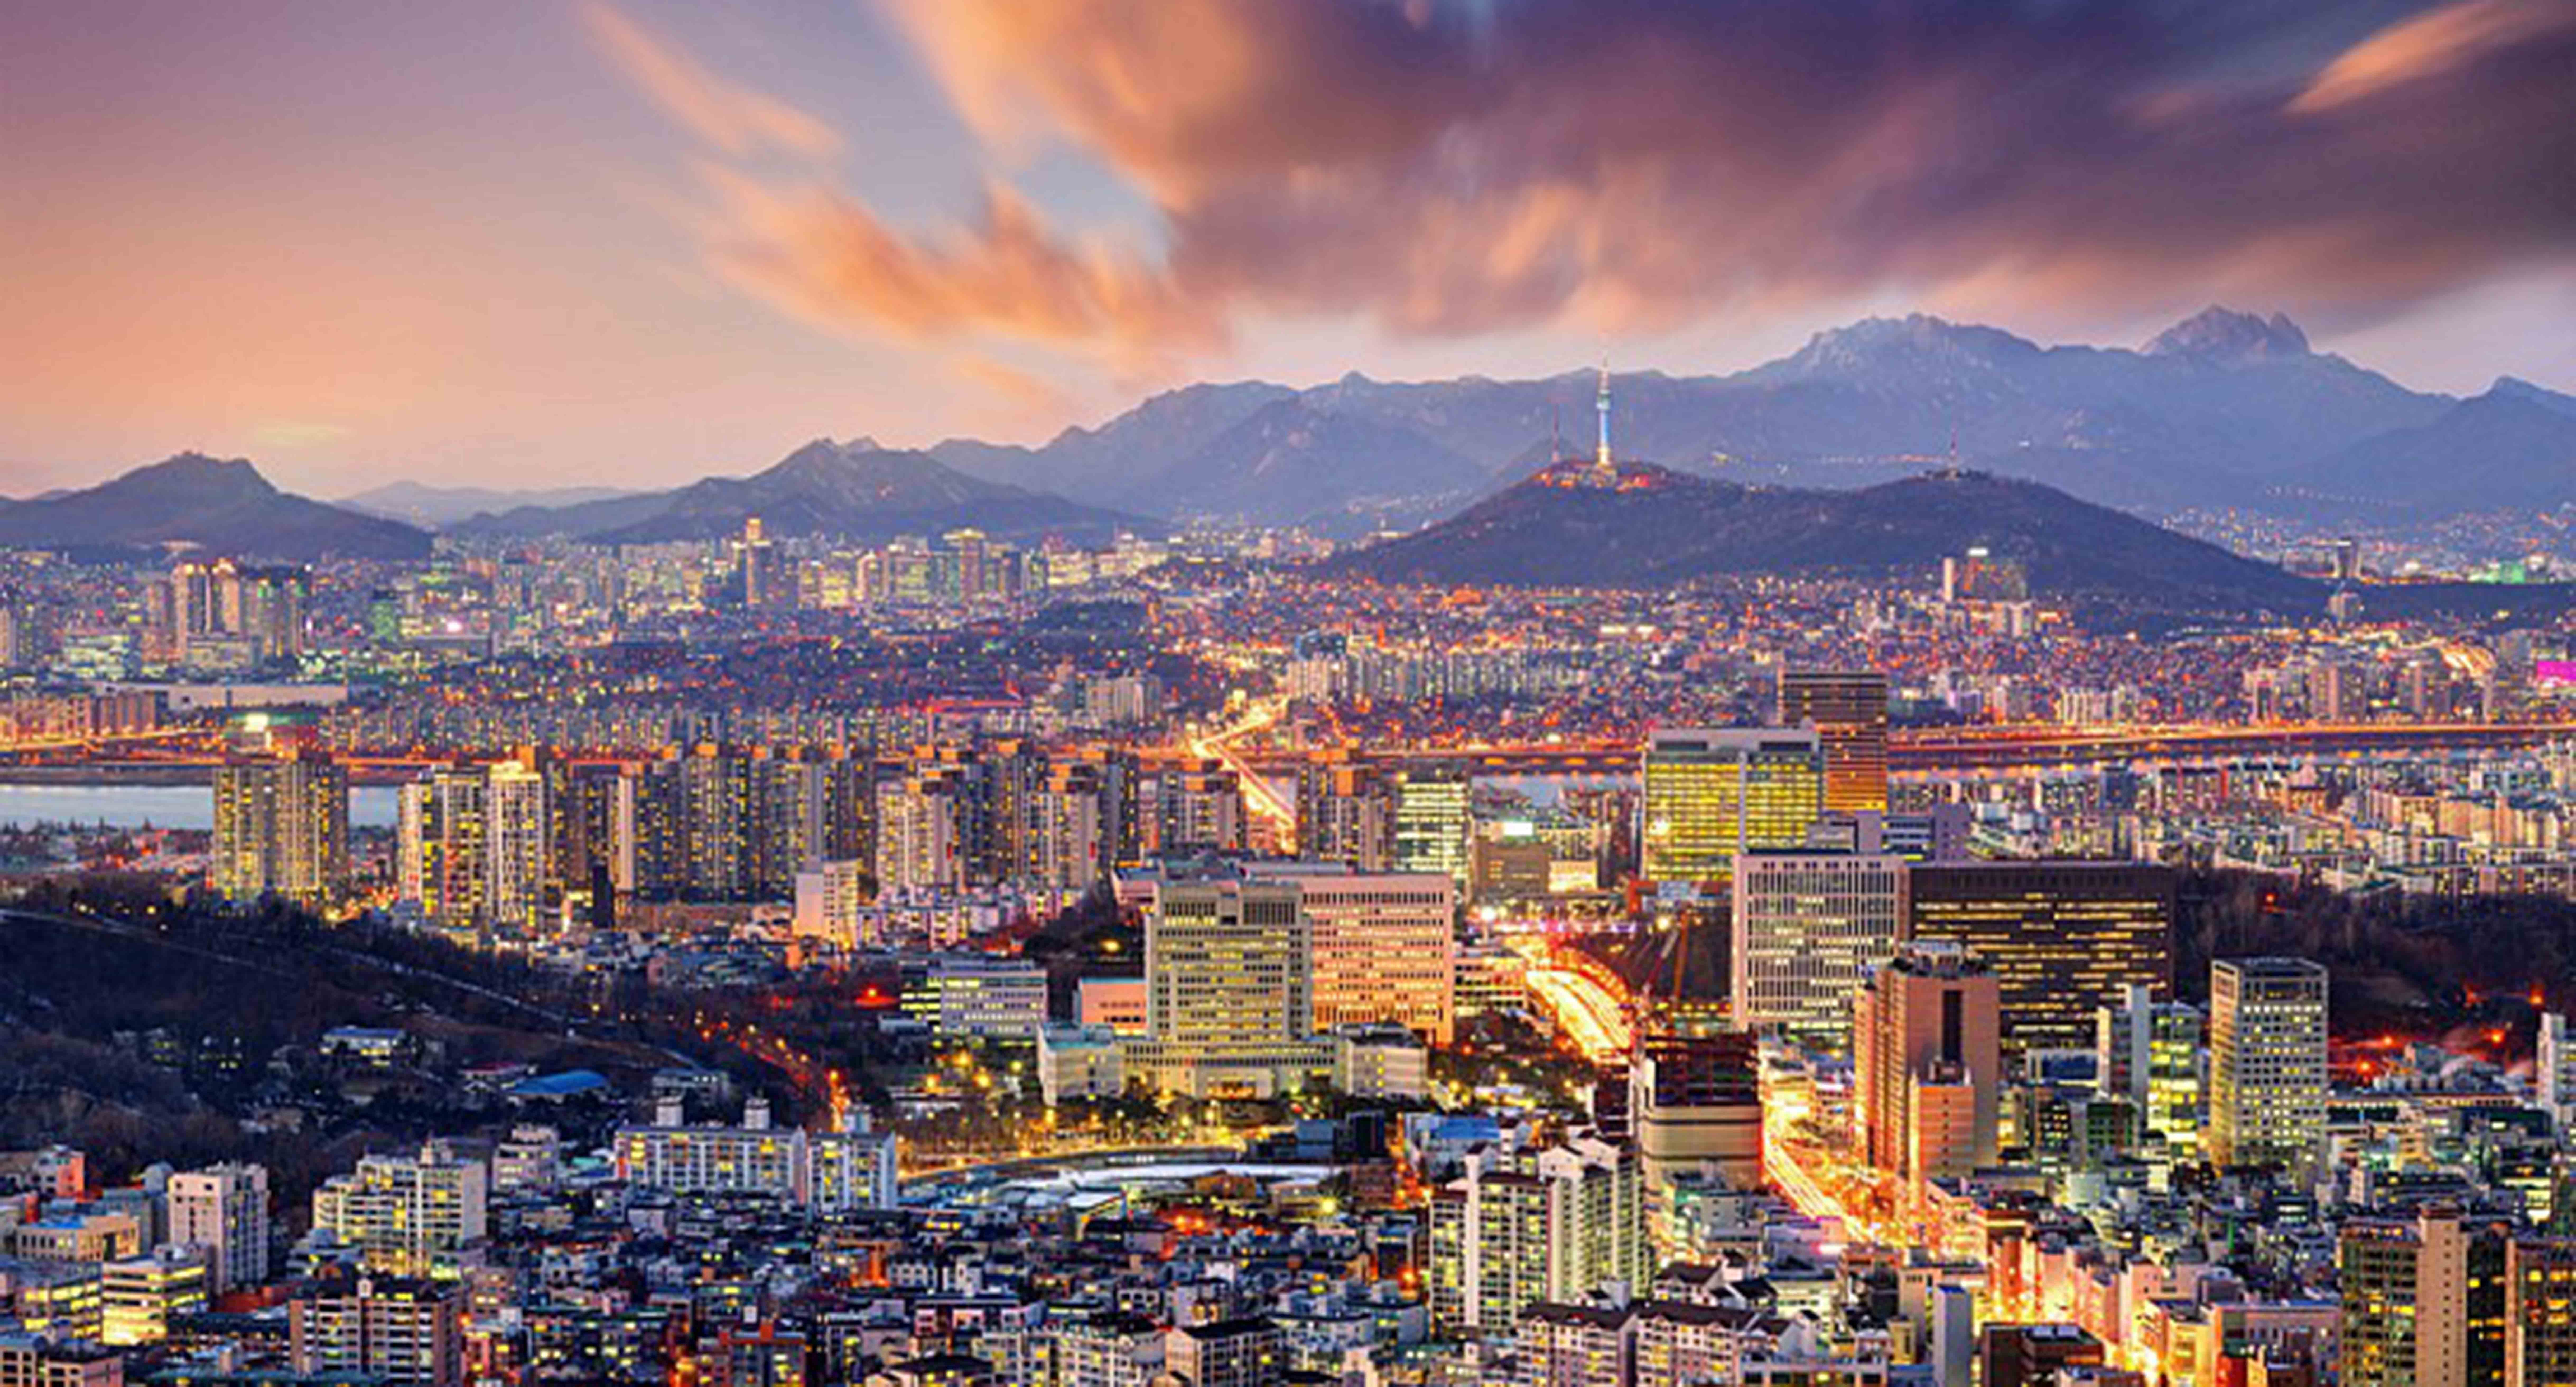 Giới thiệu thủ đô Hàn Quốc - Seoul - Du học Hàn Quốc - Uy Tín - 12 năm kinh  nghiệm - Tỉ lệ ra VISA 100%